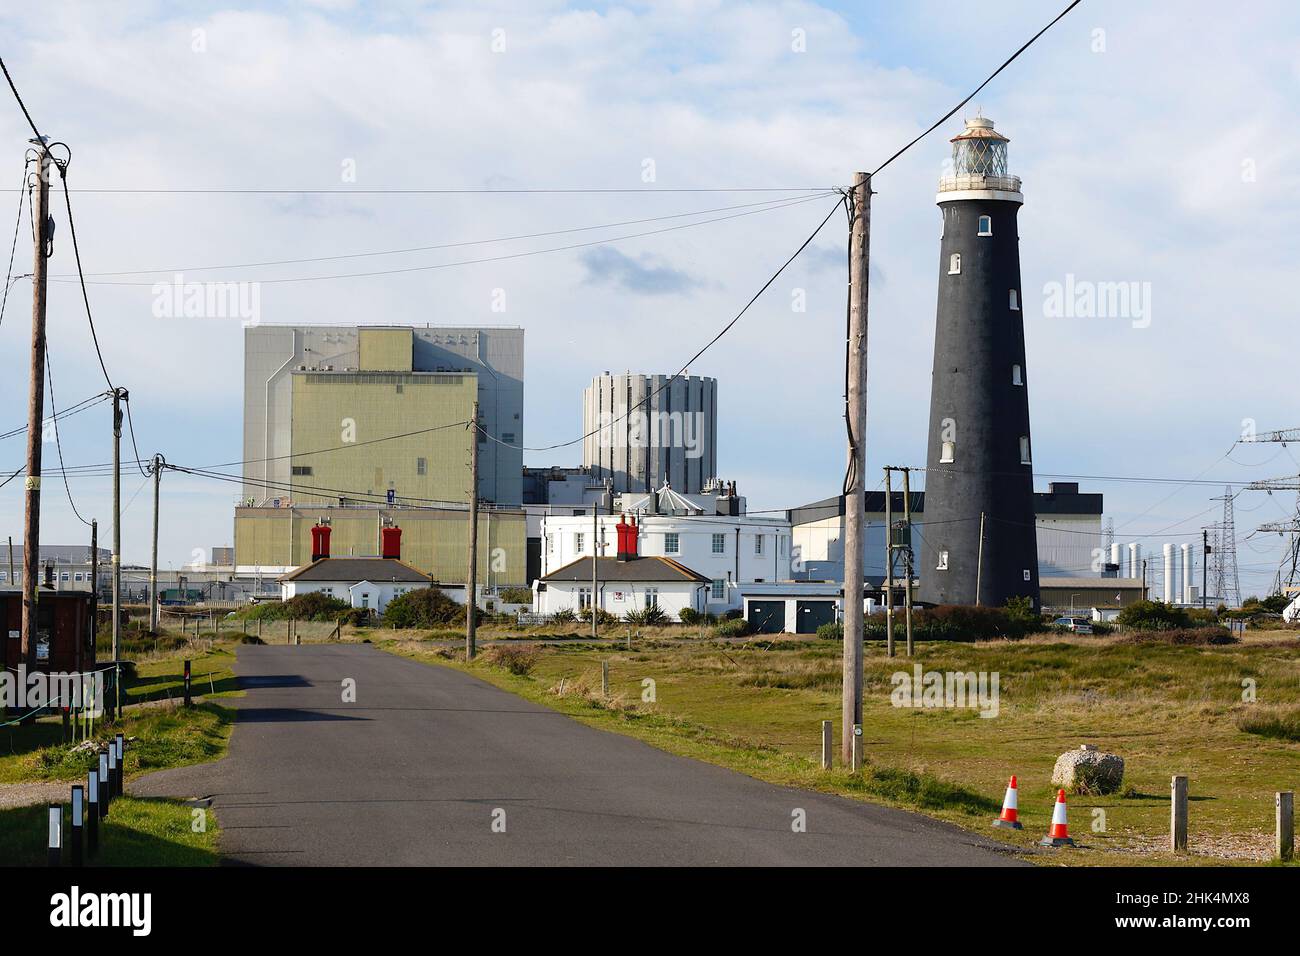 Centrale nucléaire EDF à Dungeness avec pylônes de distribution d'électricité, dungeness, kent, royaume-uni Banque D'Images